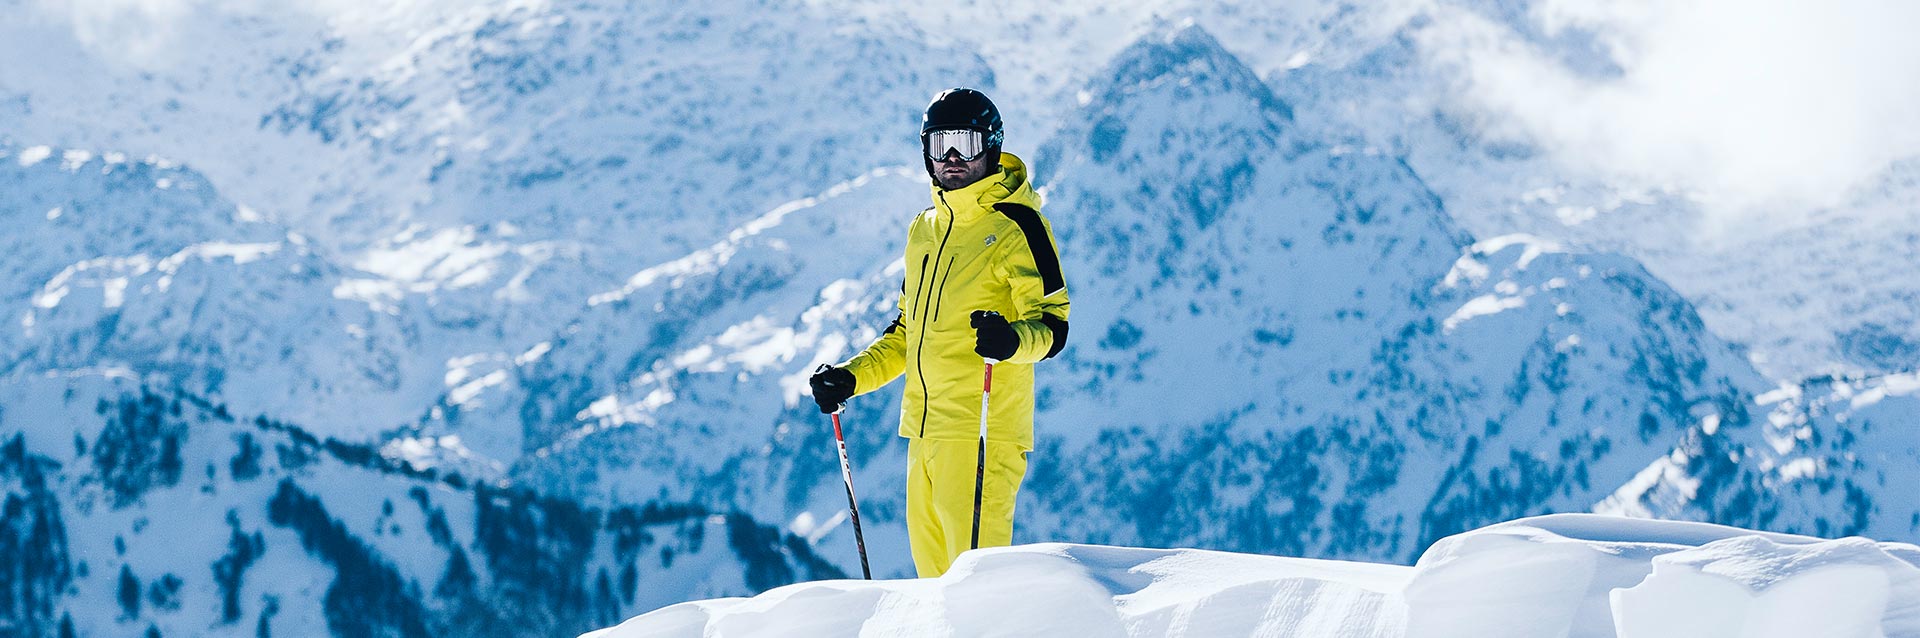 Jak wybrać kurtkę i spodnie narciarskie? | Poradnik | S'portofino